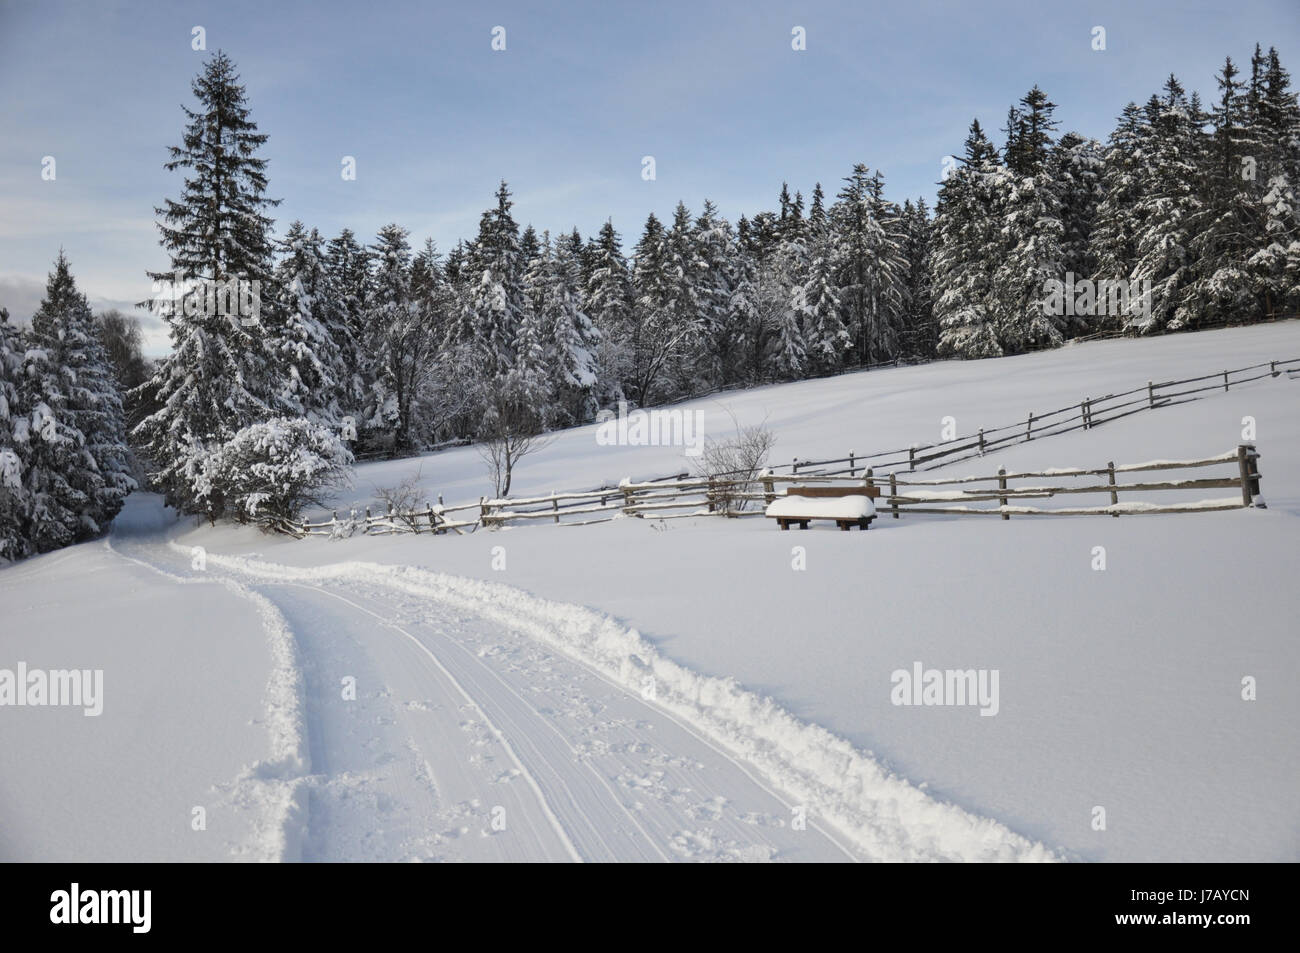 Schnee winter spuren zaun nadelwald wald schlittenspur schneedecke schnee Foto Stock